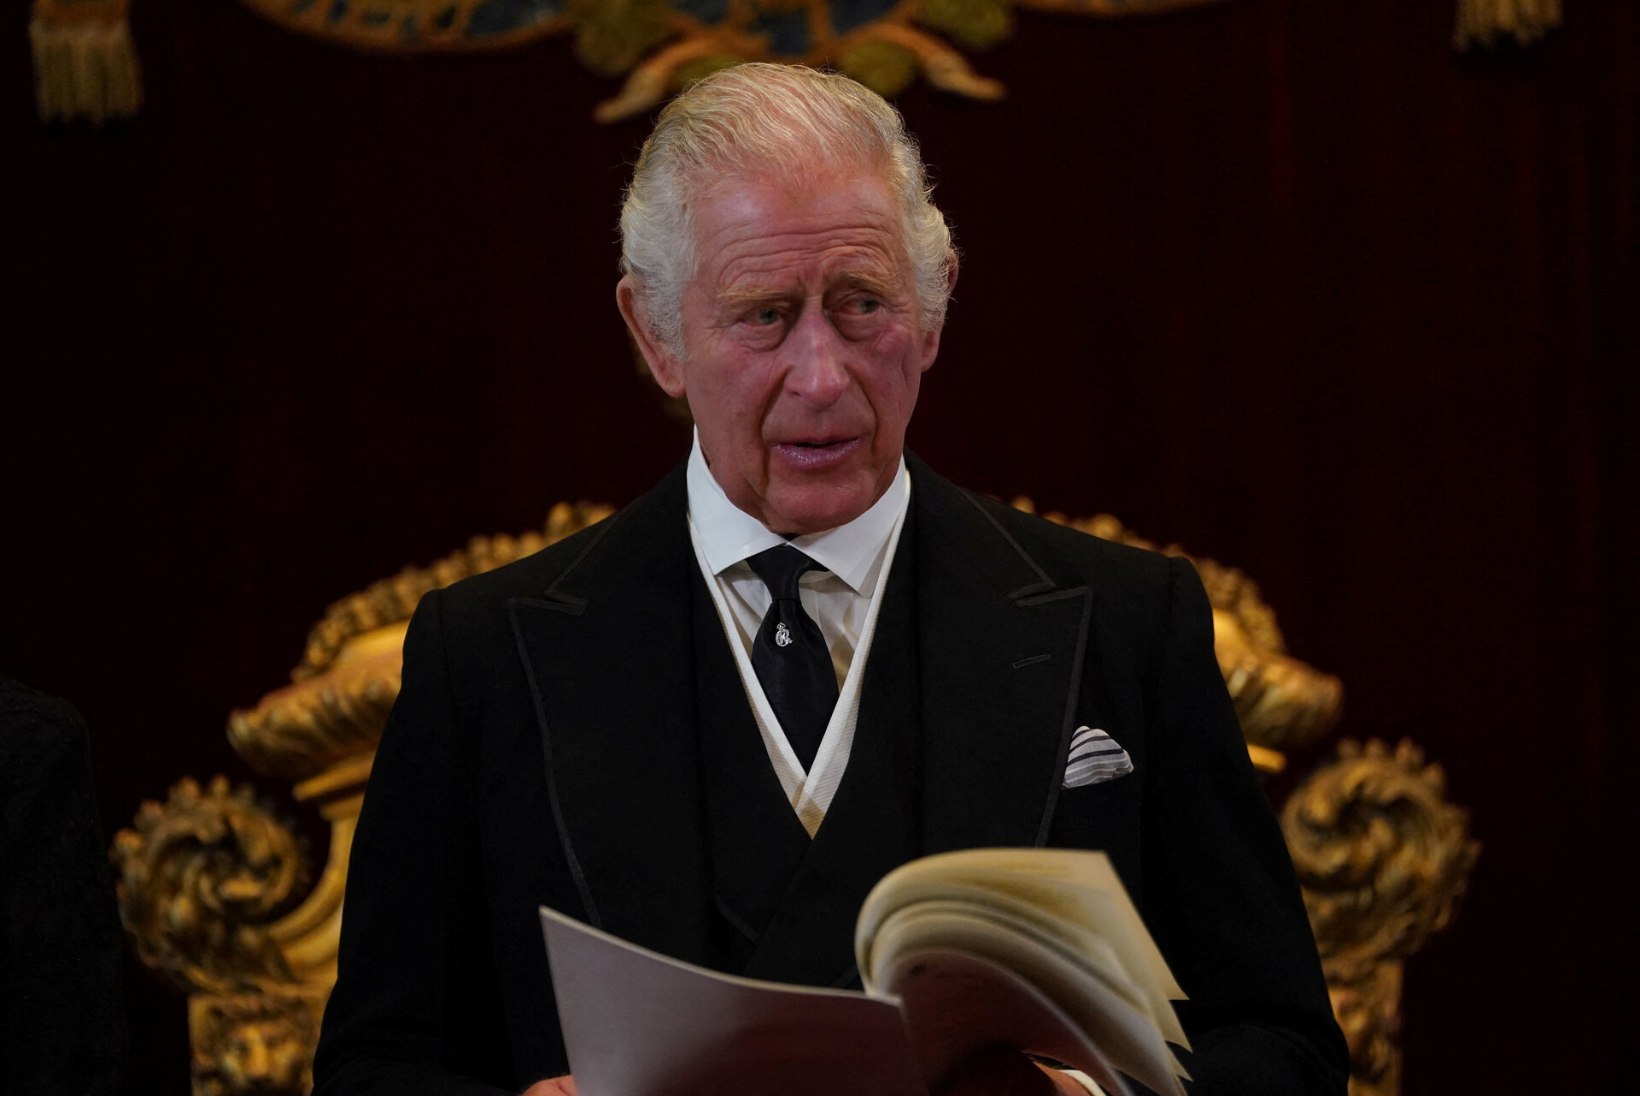 ÕL LONDONIS | Charles III kinnitati ametlikult kuningaks. Londonlanna: see pole poliitiline otsus, vaid traditsioon!